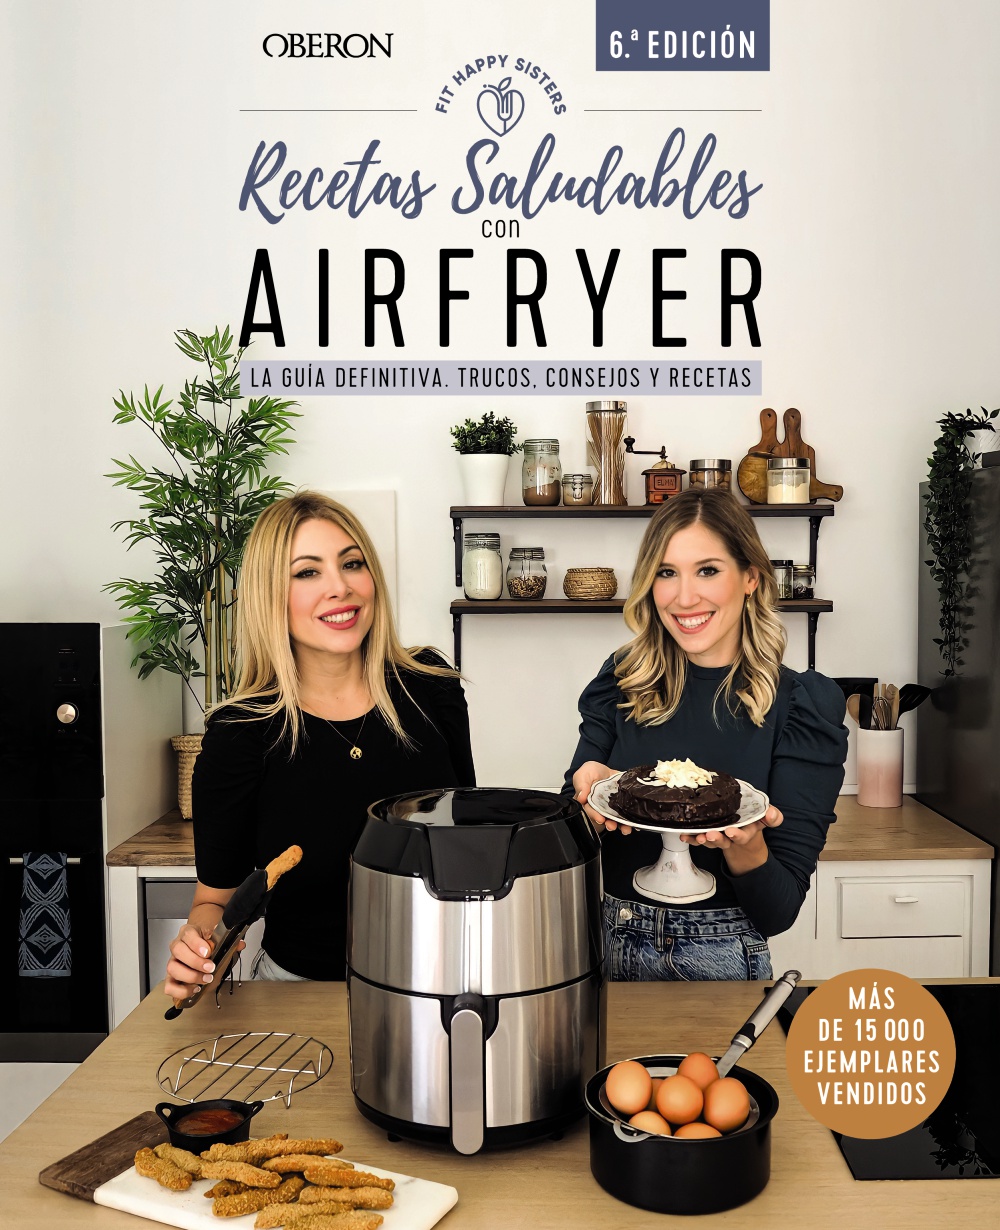 Recetas saludables con Airfryer - Ani y Sara  Fit Happy Sisters 